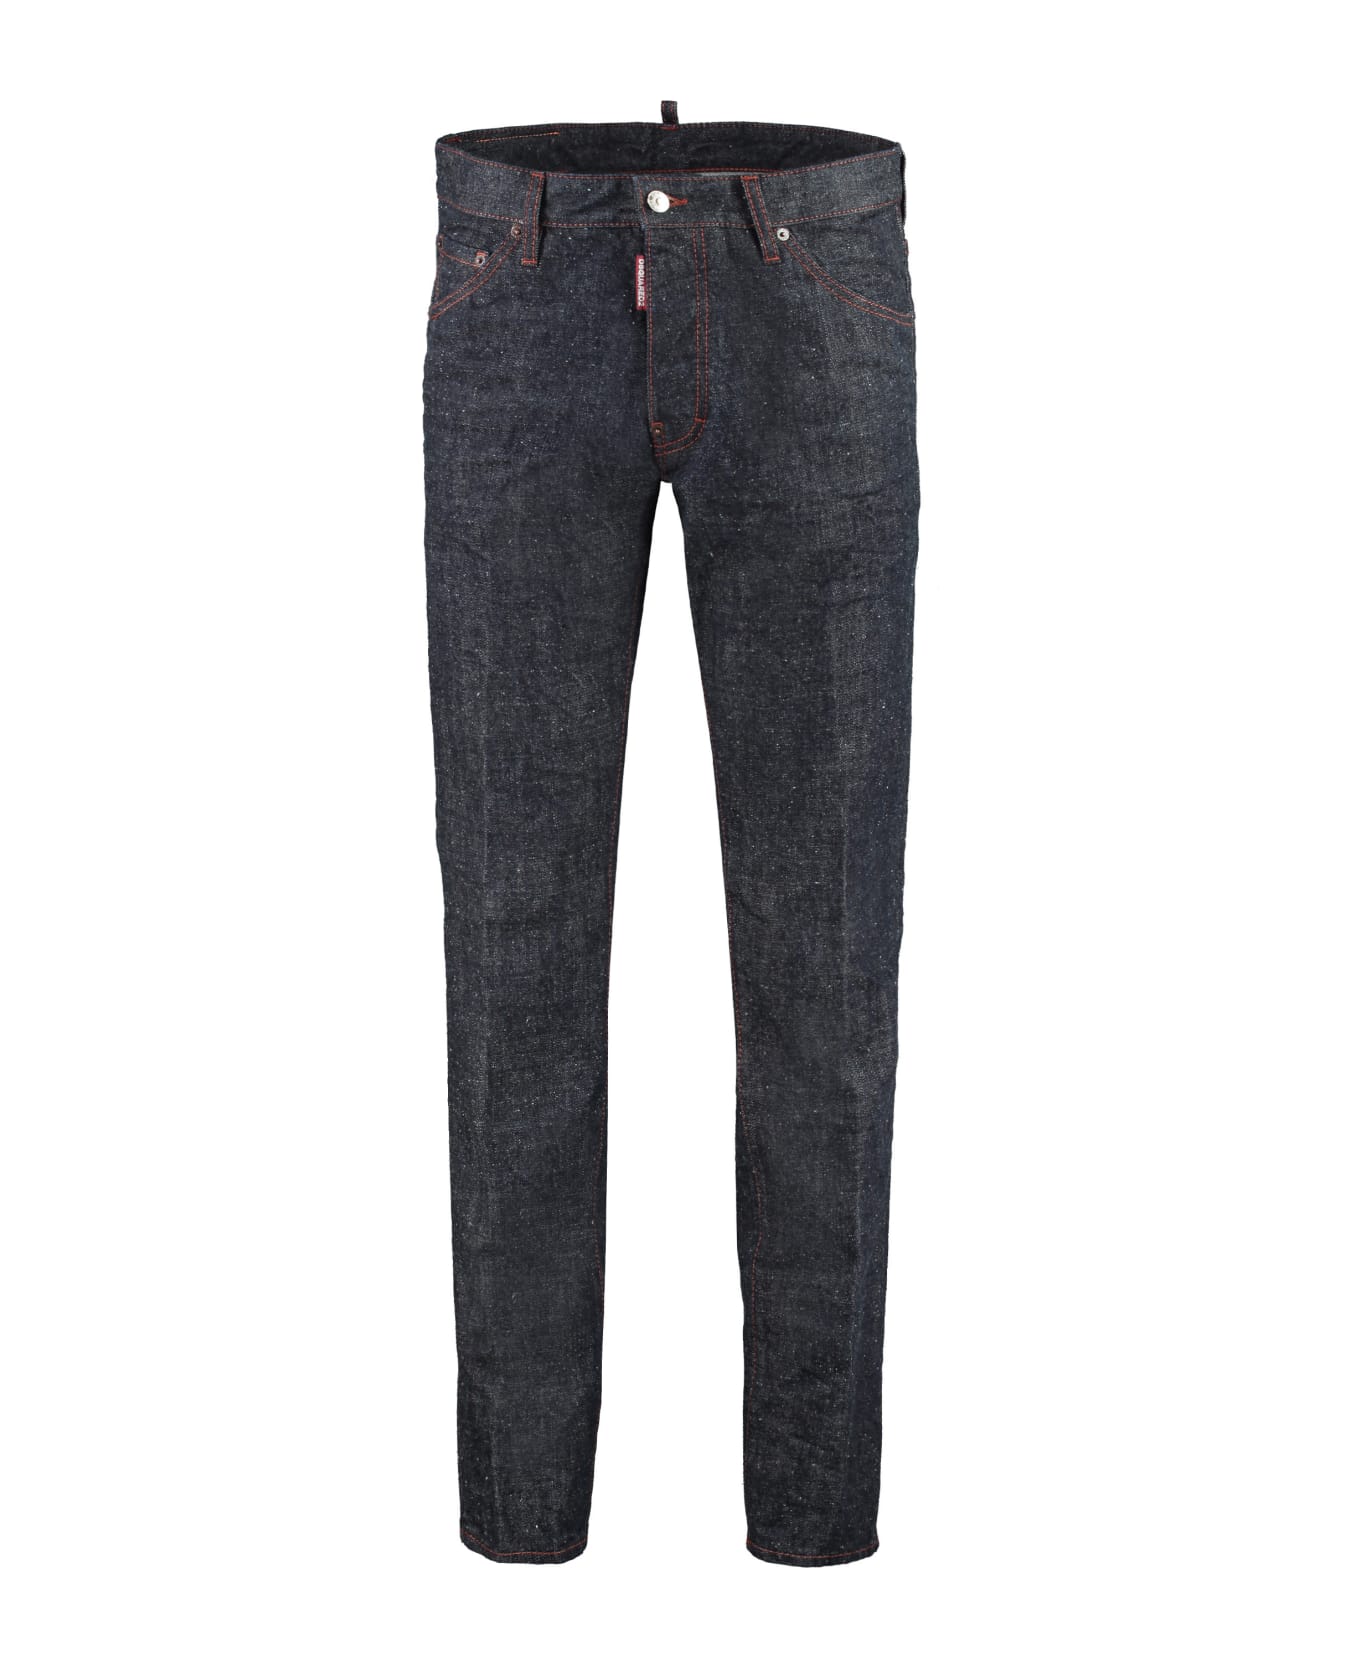 Dsquared2 Cool Guy 5-pocket Jeans - Denim